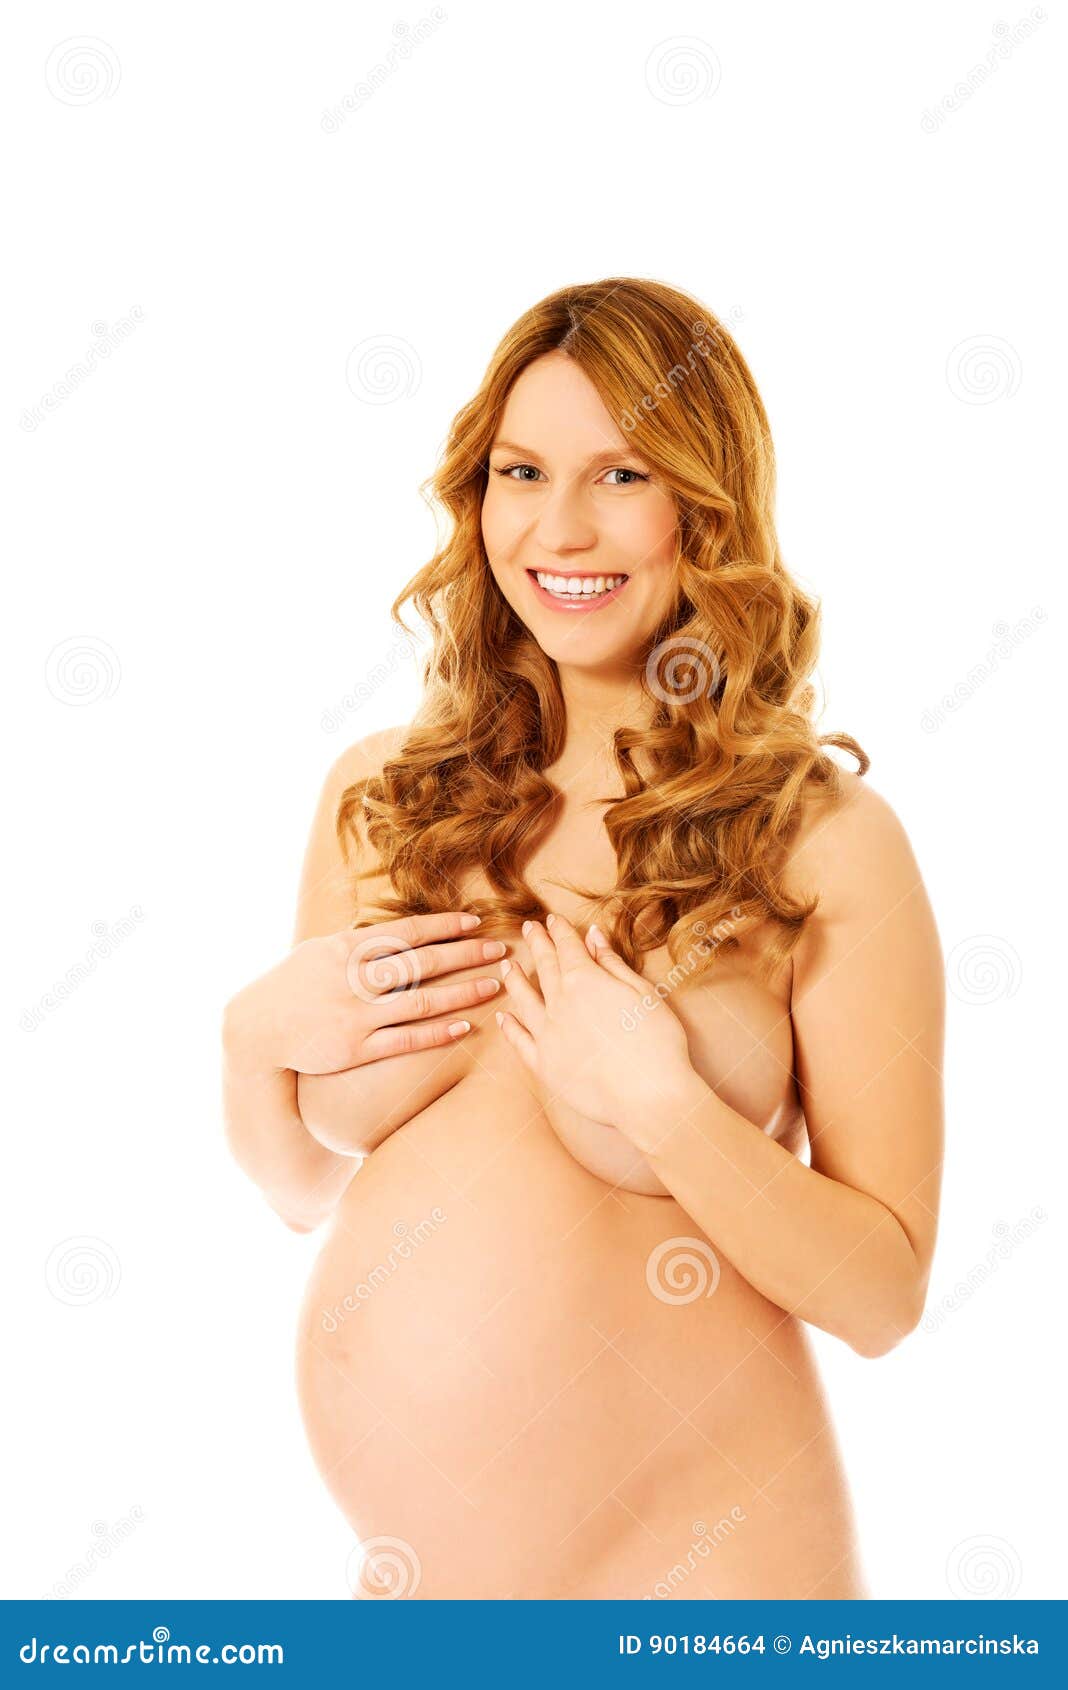 Naked Pregnant Weman